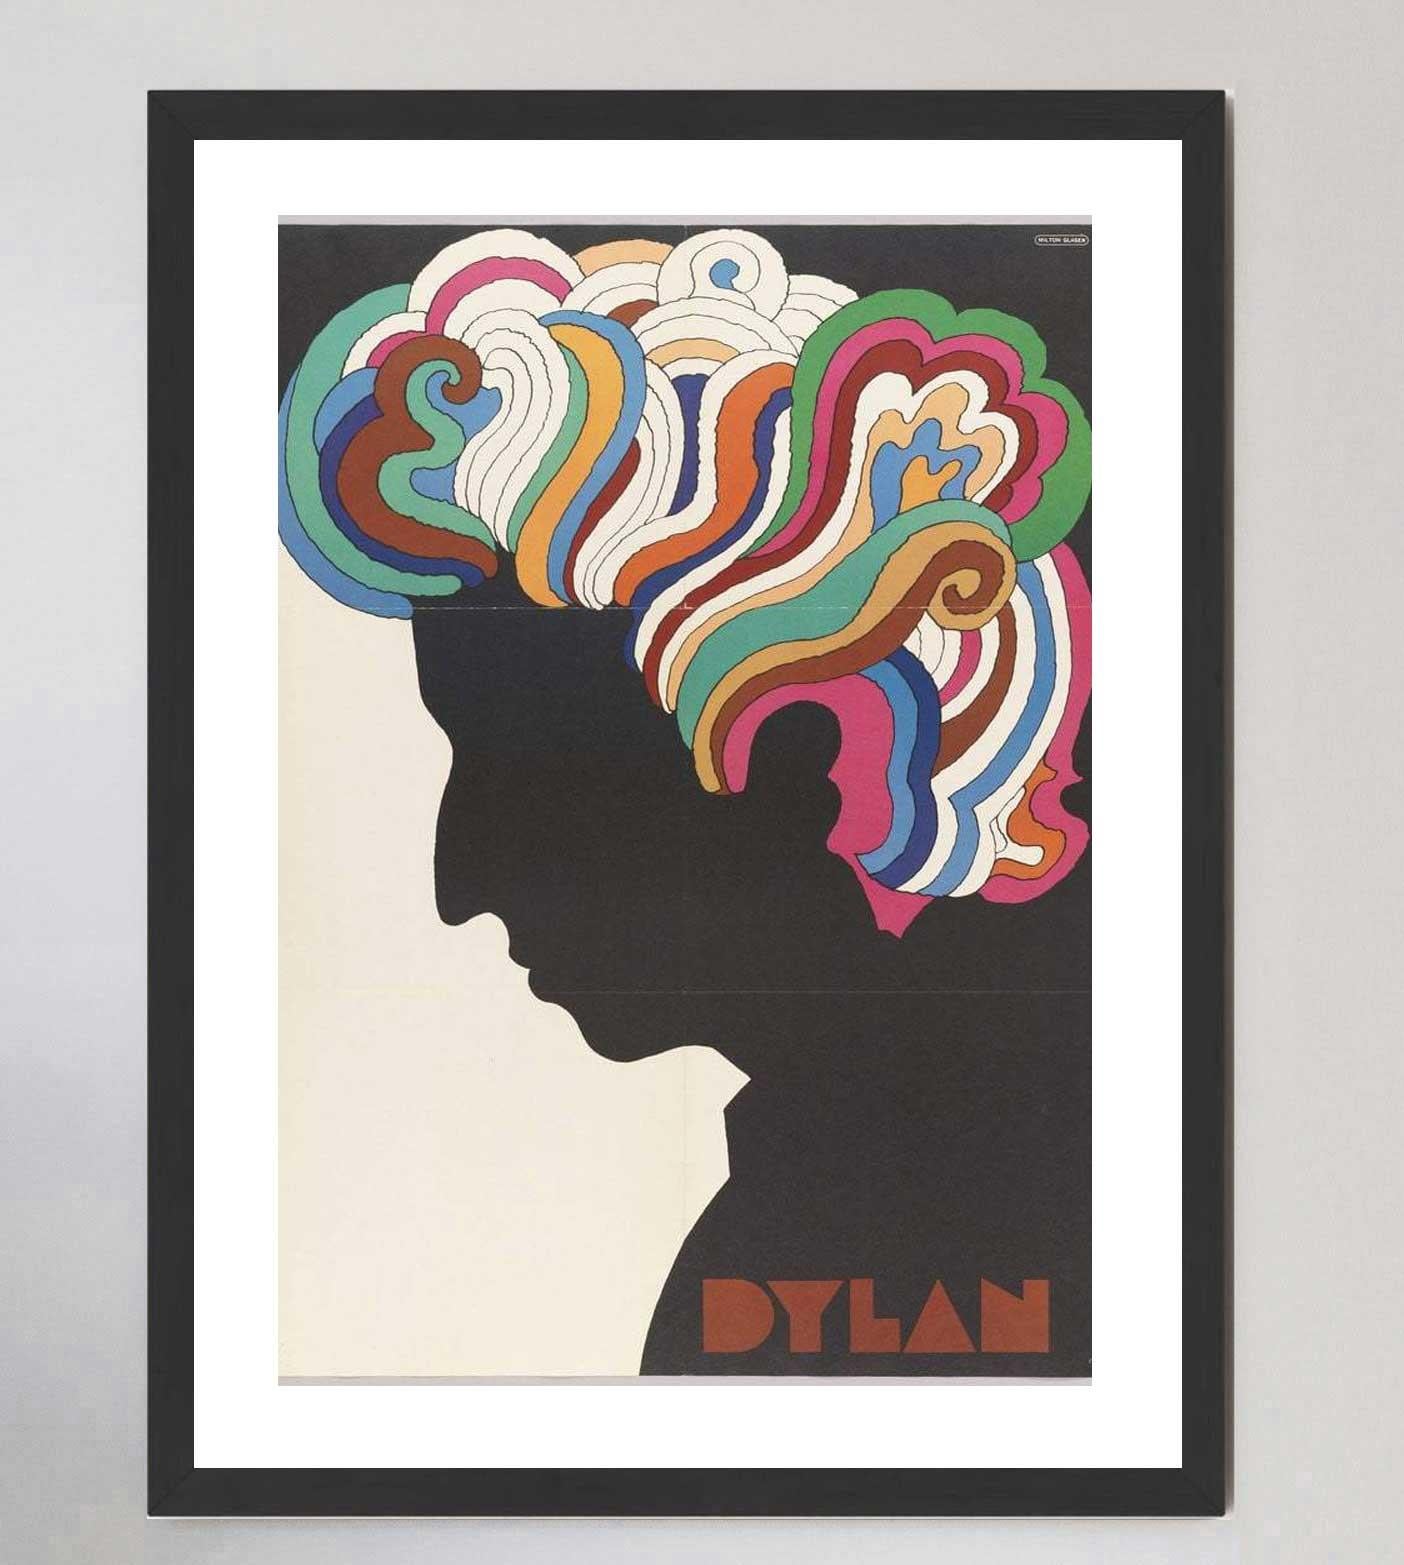 Le célèbre graphiste Milton Glaser a été chargé de créer cette affiche spéciale pour accompagner l'album Greatest Hits de Bob Dylan en 1966. Dylan souffrant de graves blessures à la suite d'un accident de moto, cette collaboration artistique visait